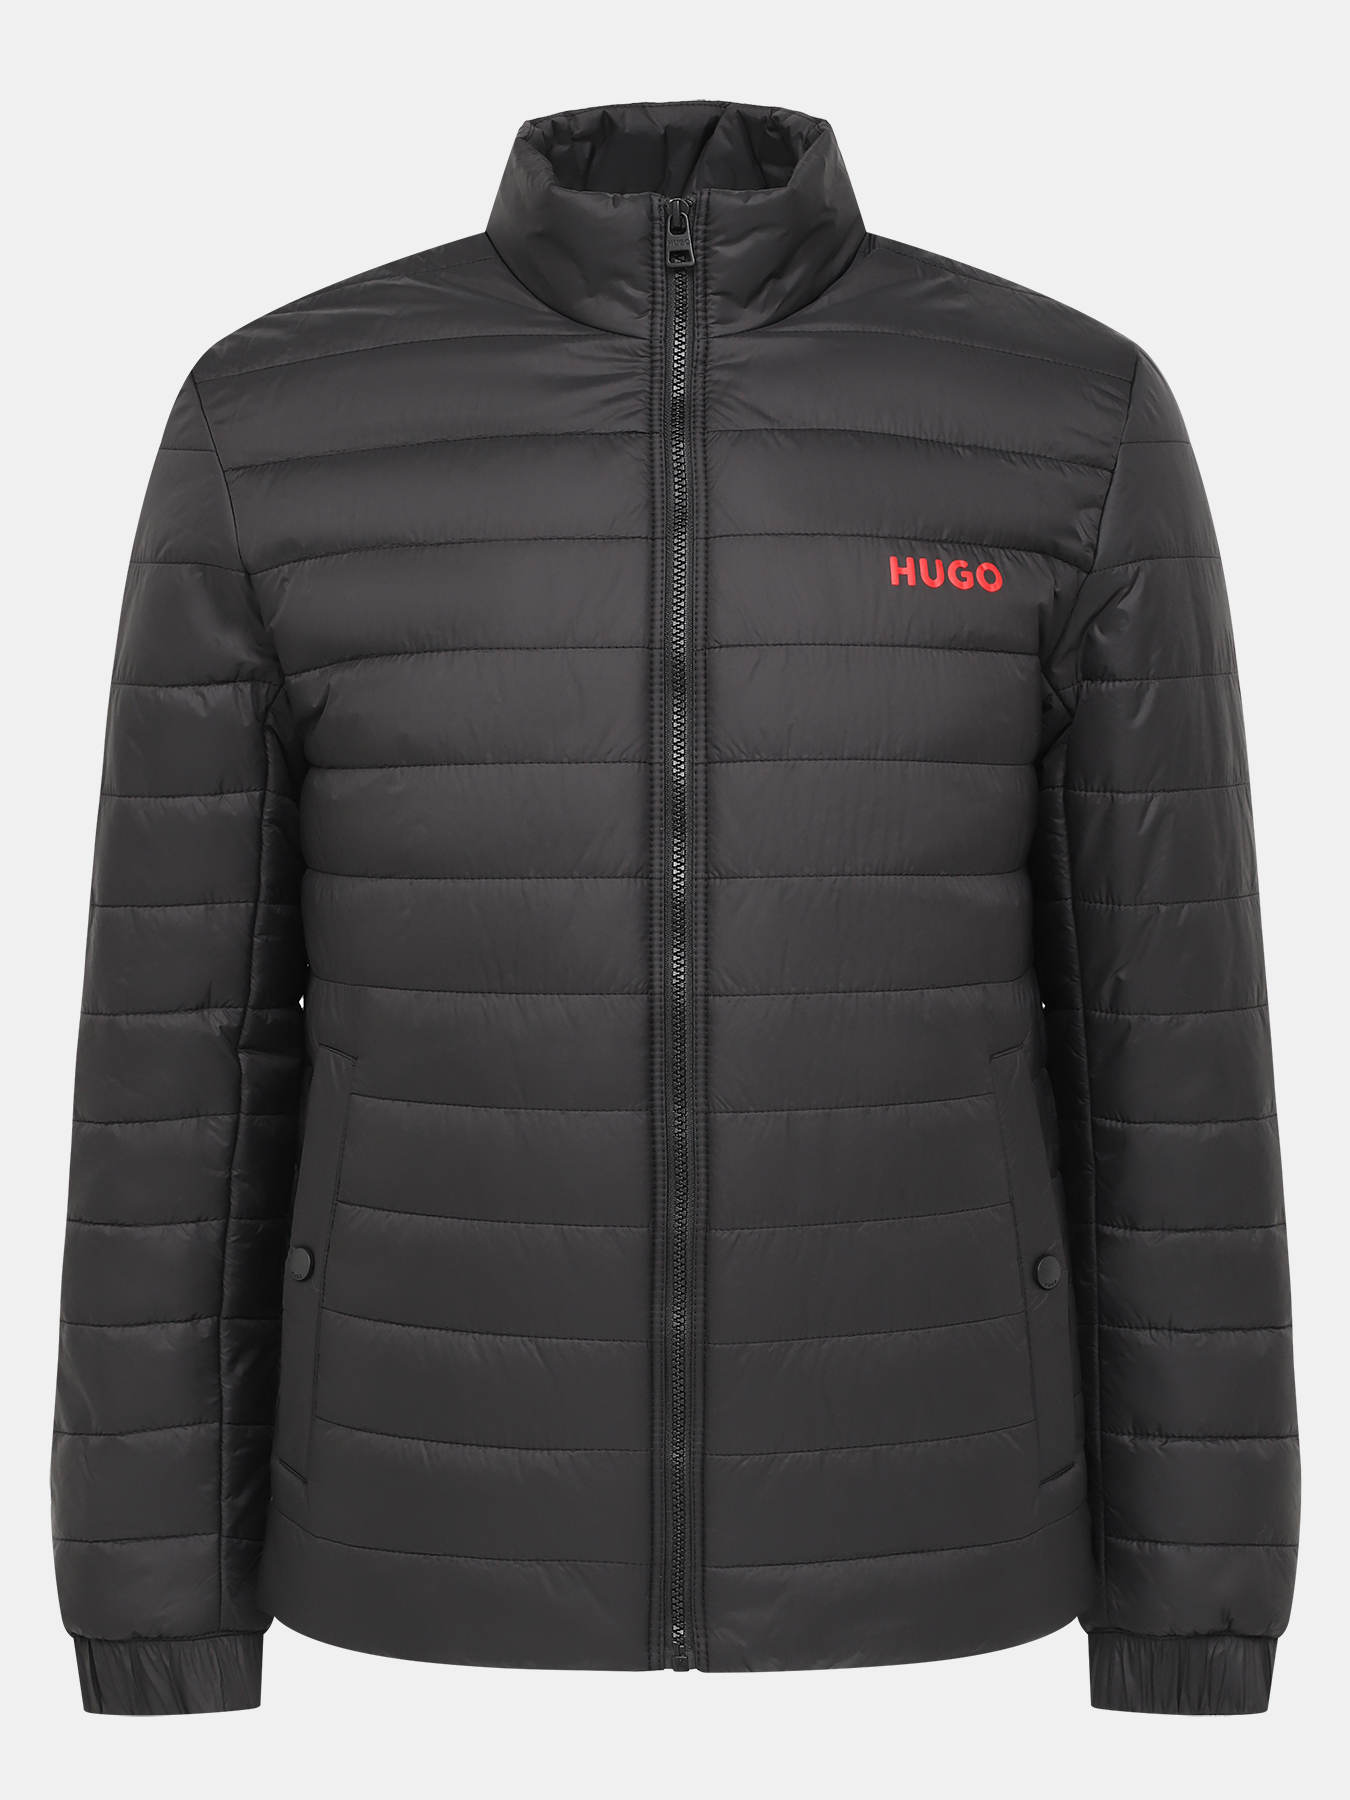 Куртка Benti HUGO 434502-046, цвет черный, размер 54-56 - фото 1